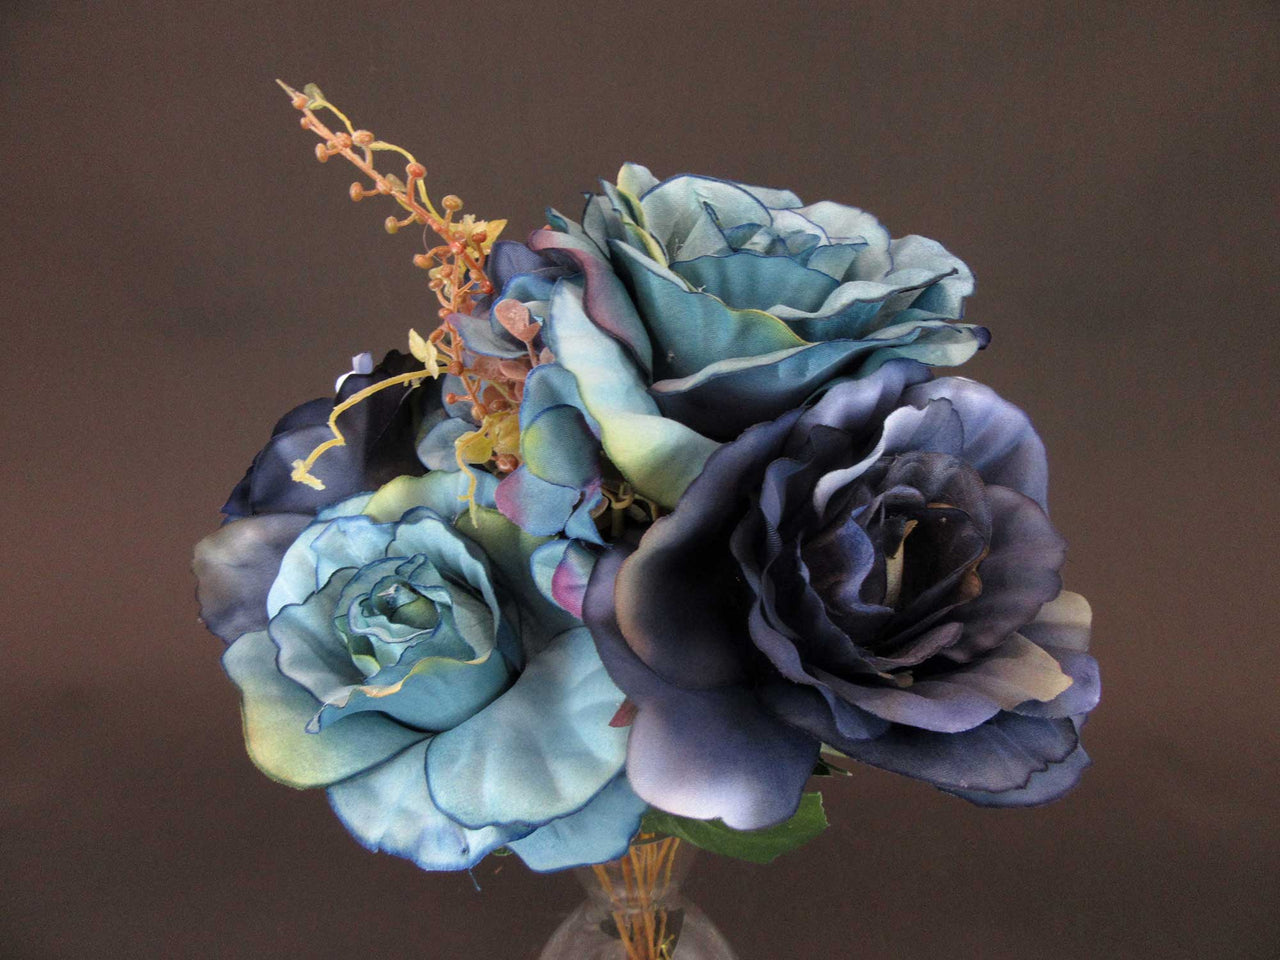 HCFL5924 - Mixed Blue Rose/Hydra Bouquet